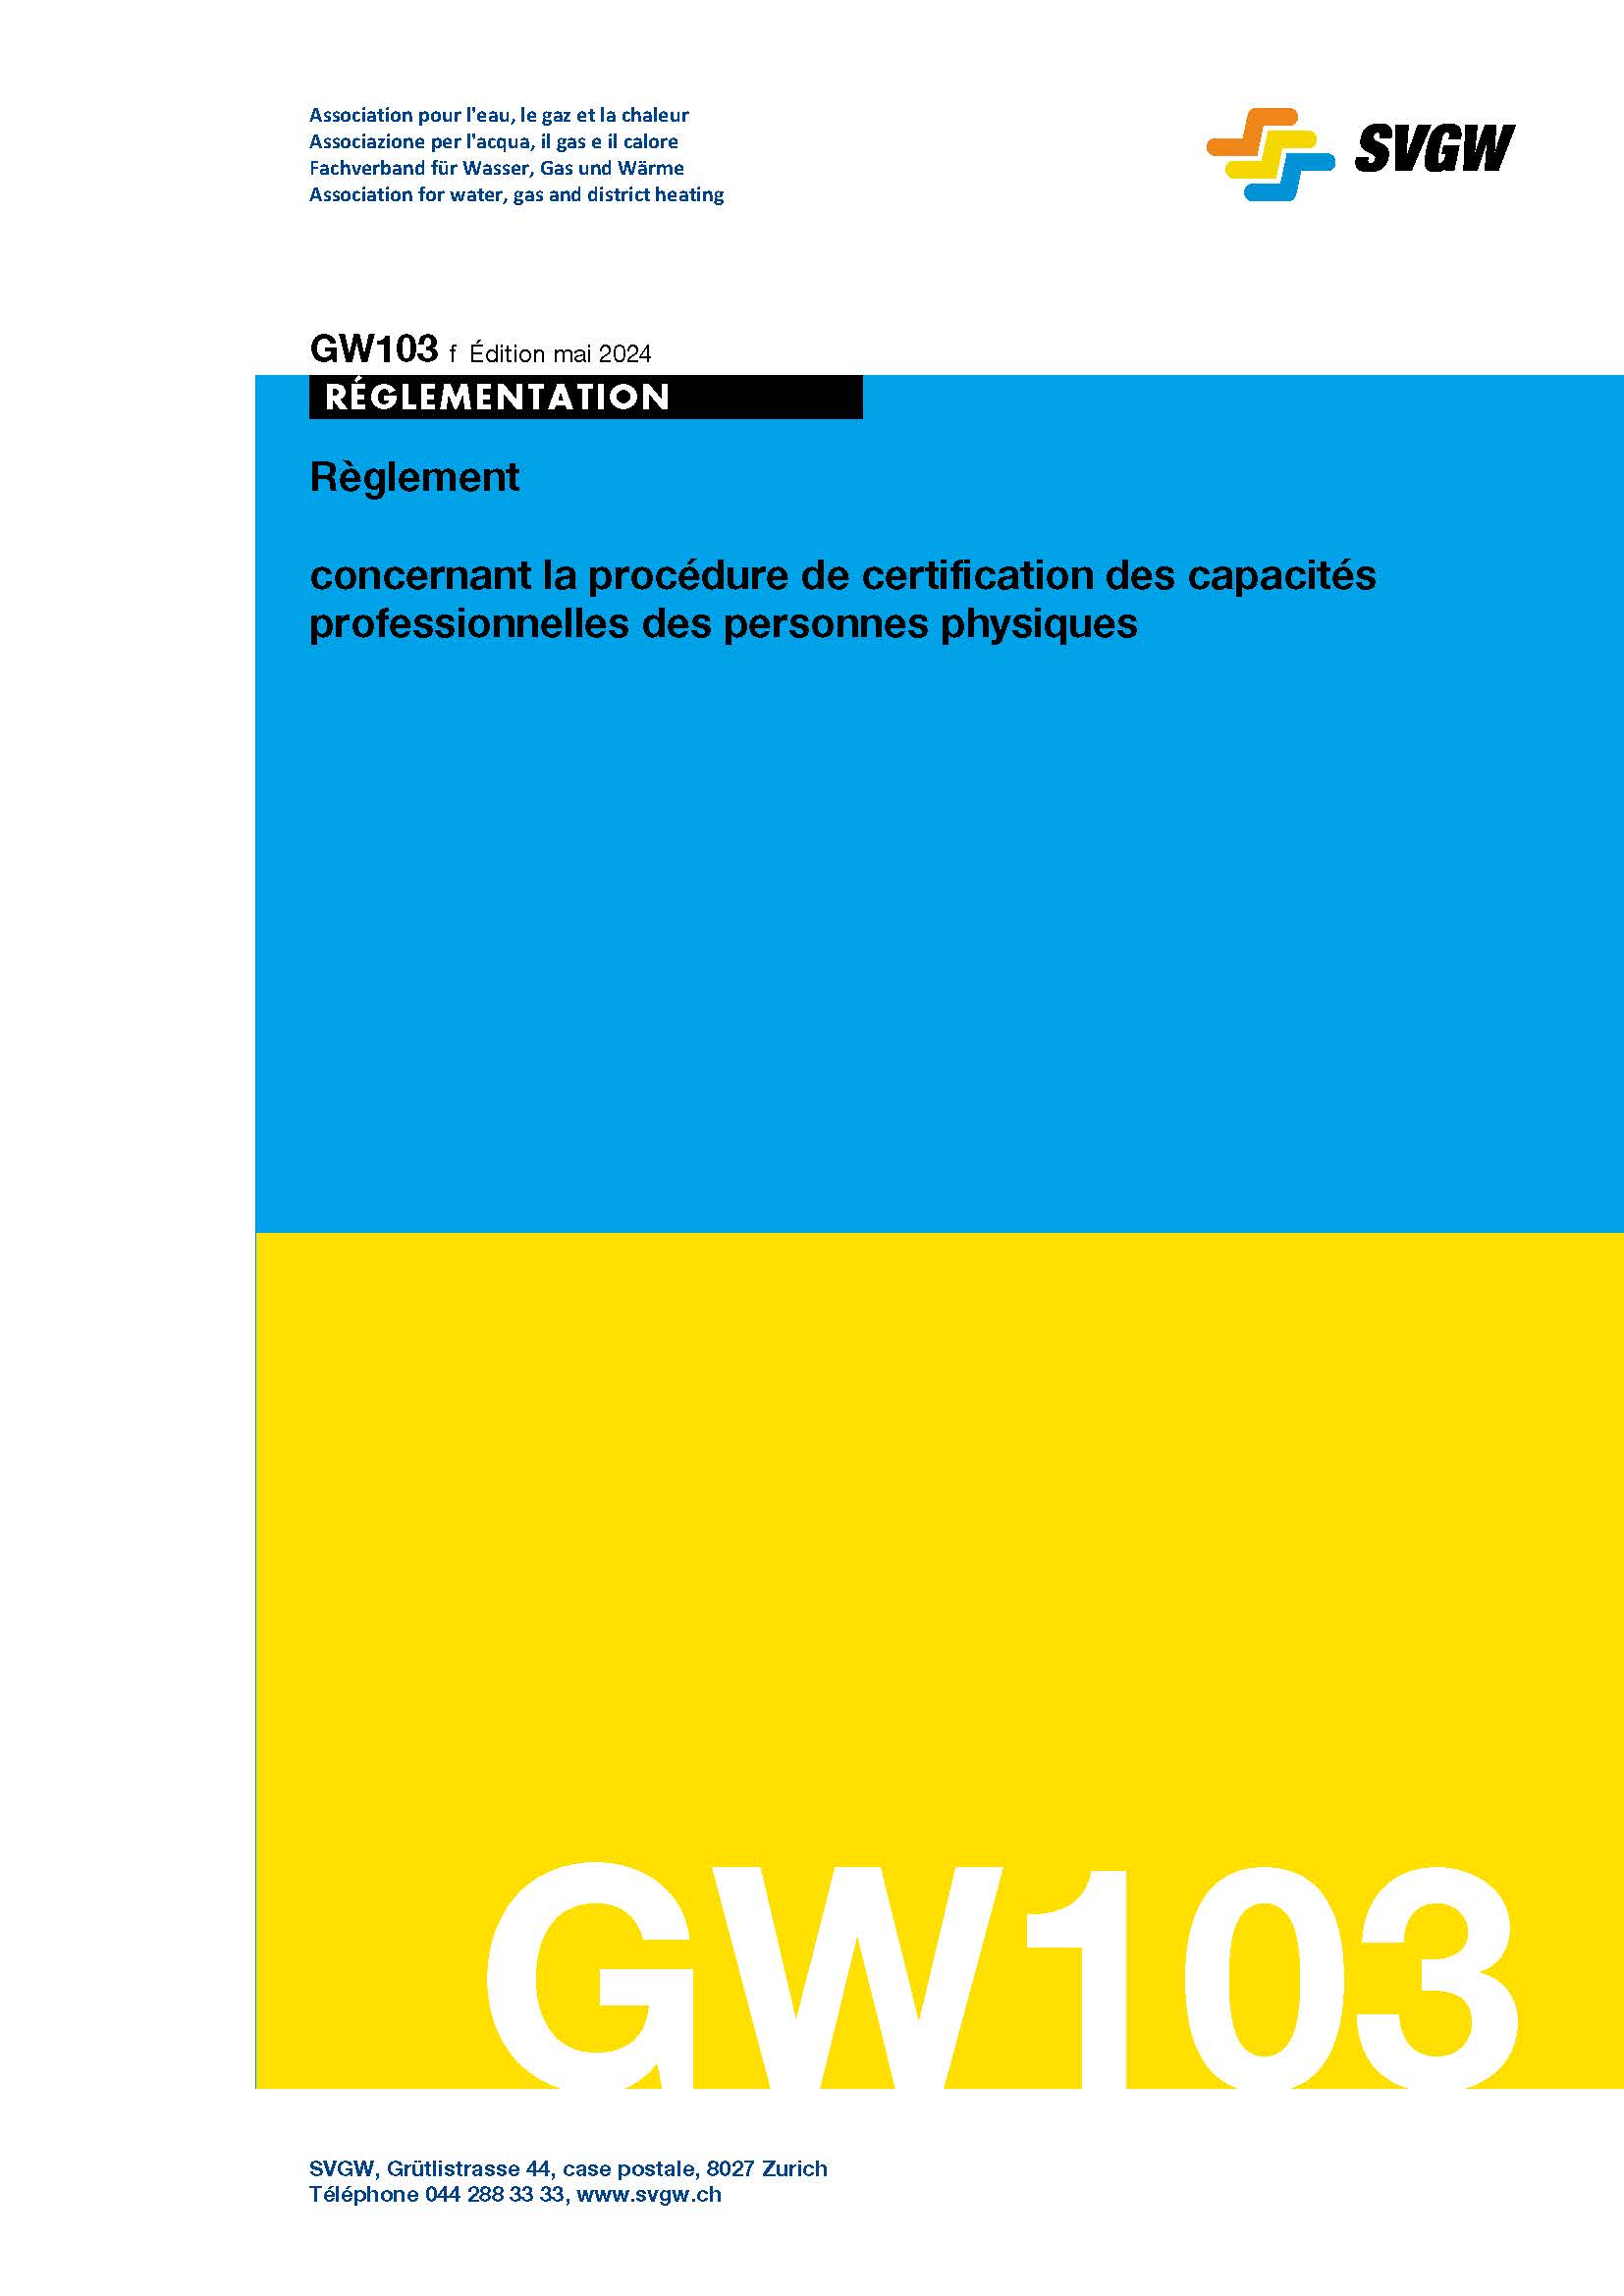 GW103 f Règlement concernant la procédure de certification des capacités professionnelles des personnes physiques